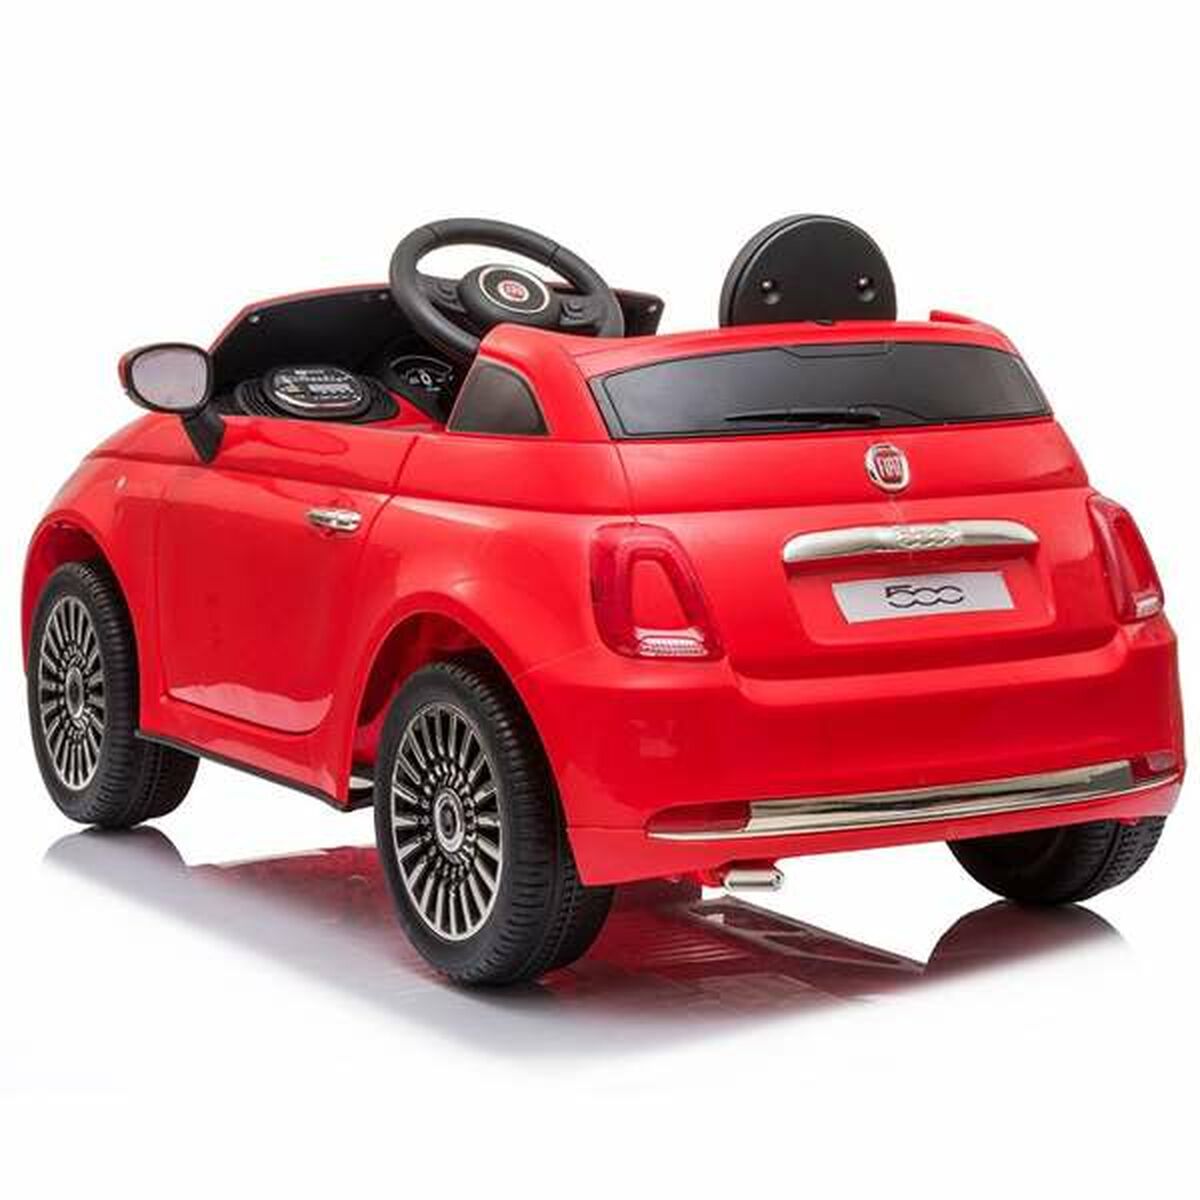 Детский электромобиль Fiat 500 113 x 67,5 x 53 cm MP3 Красный 30 W 6 V С дистанционным управлением